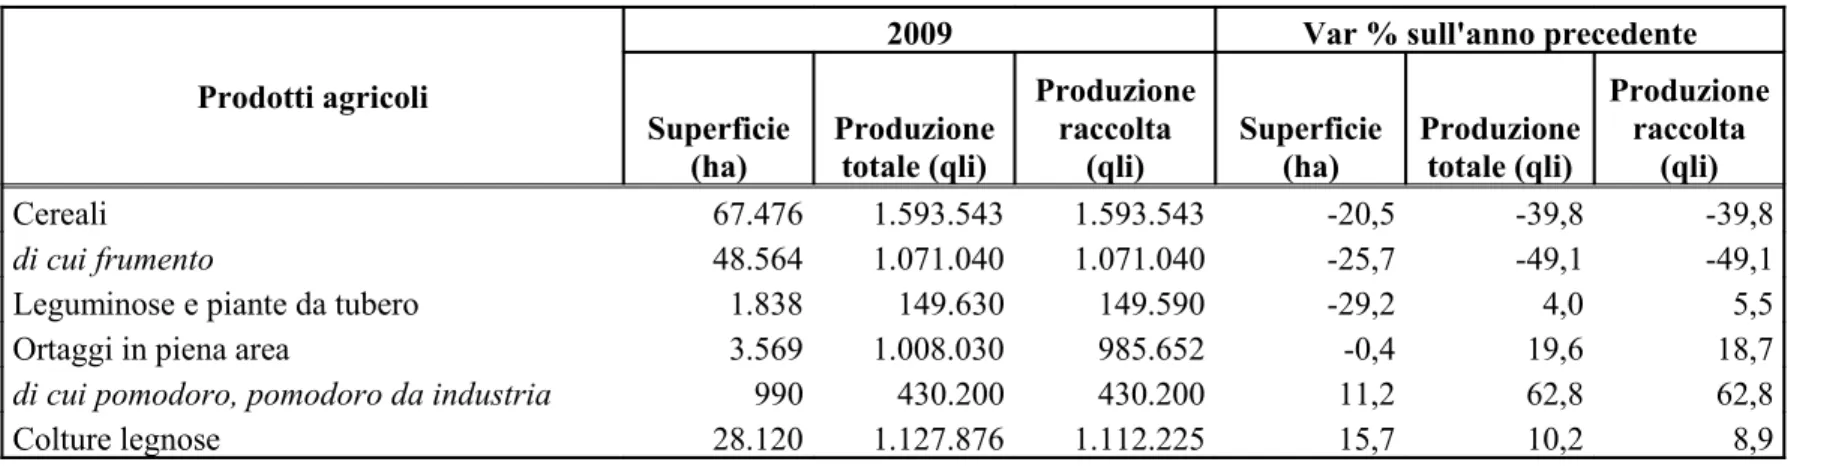 Tabella 7 - Principali prodotti agricoli: Superficie, produzioni e variazioni percentuali 